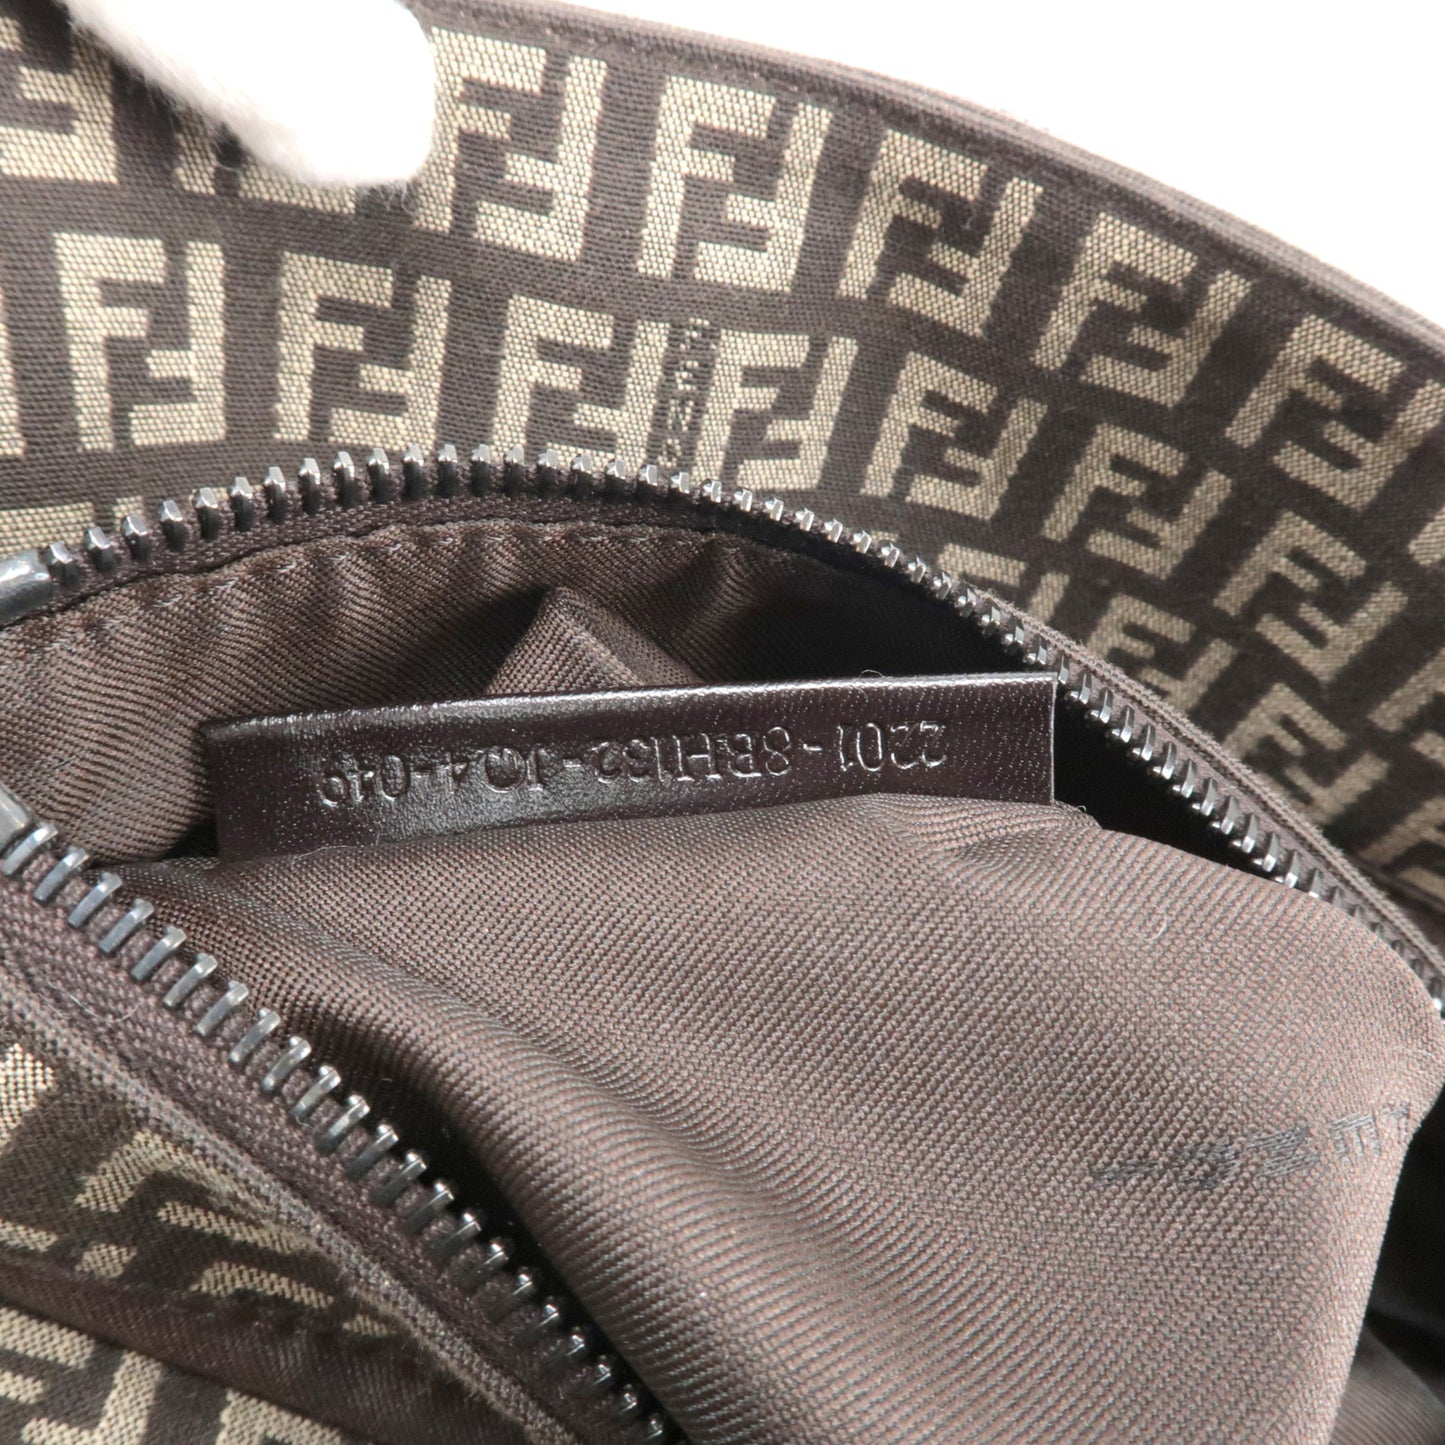 FENDI Zucchino Canvas Leather Hand Bag Beige Brown 8BH132